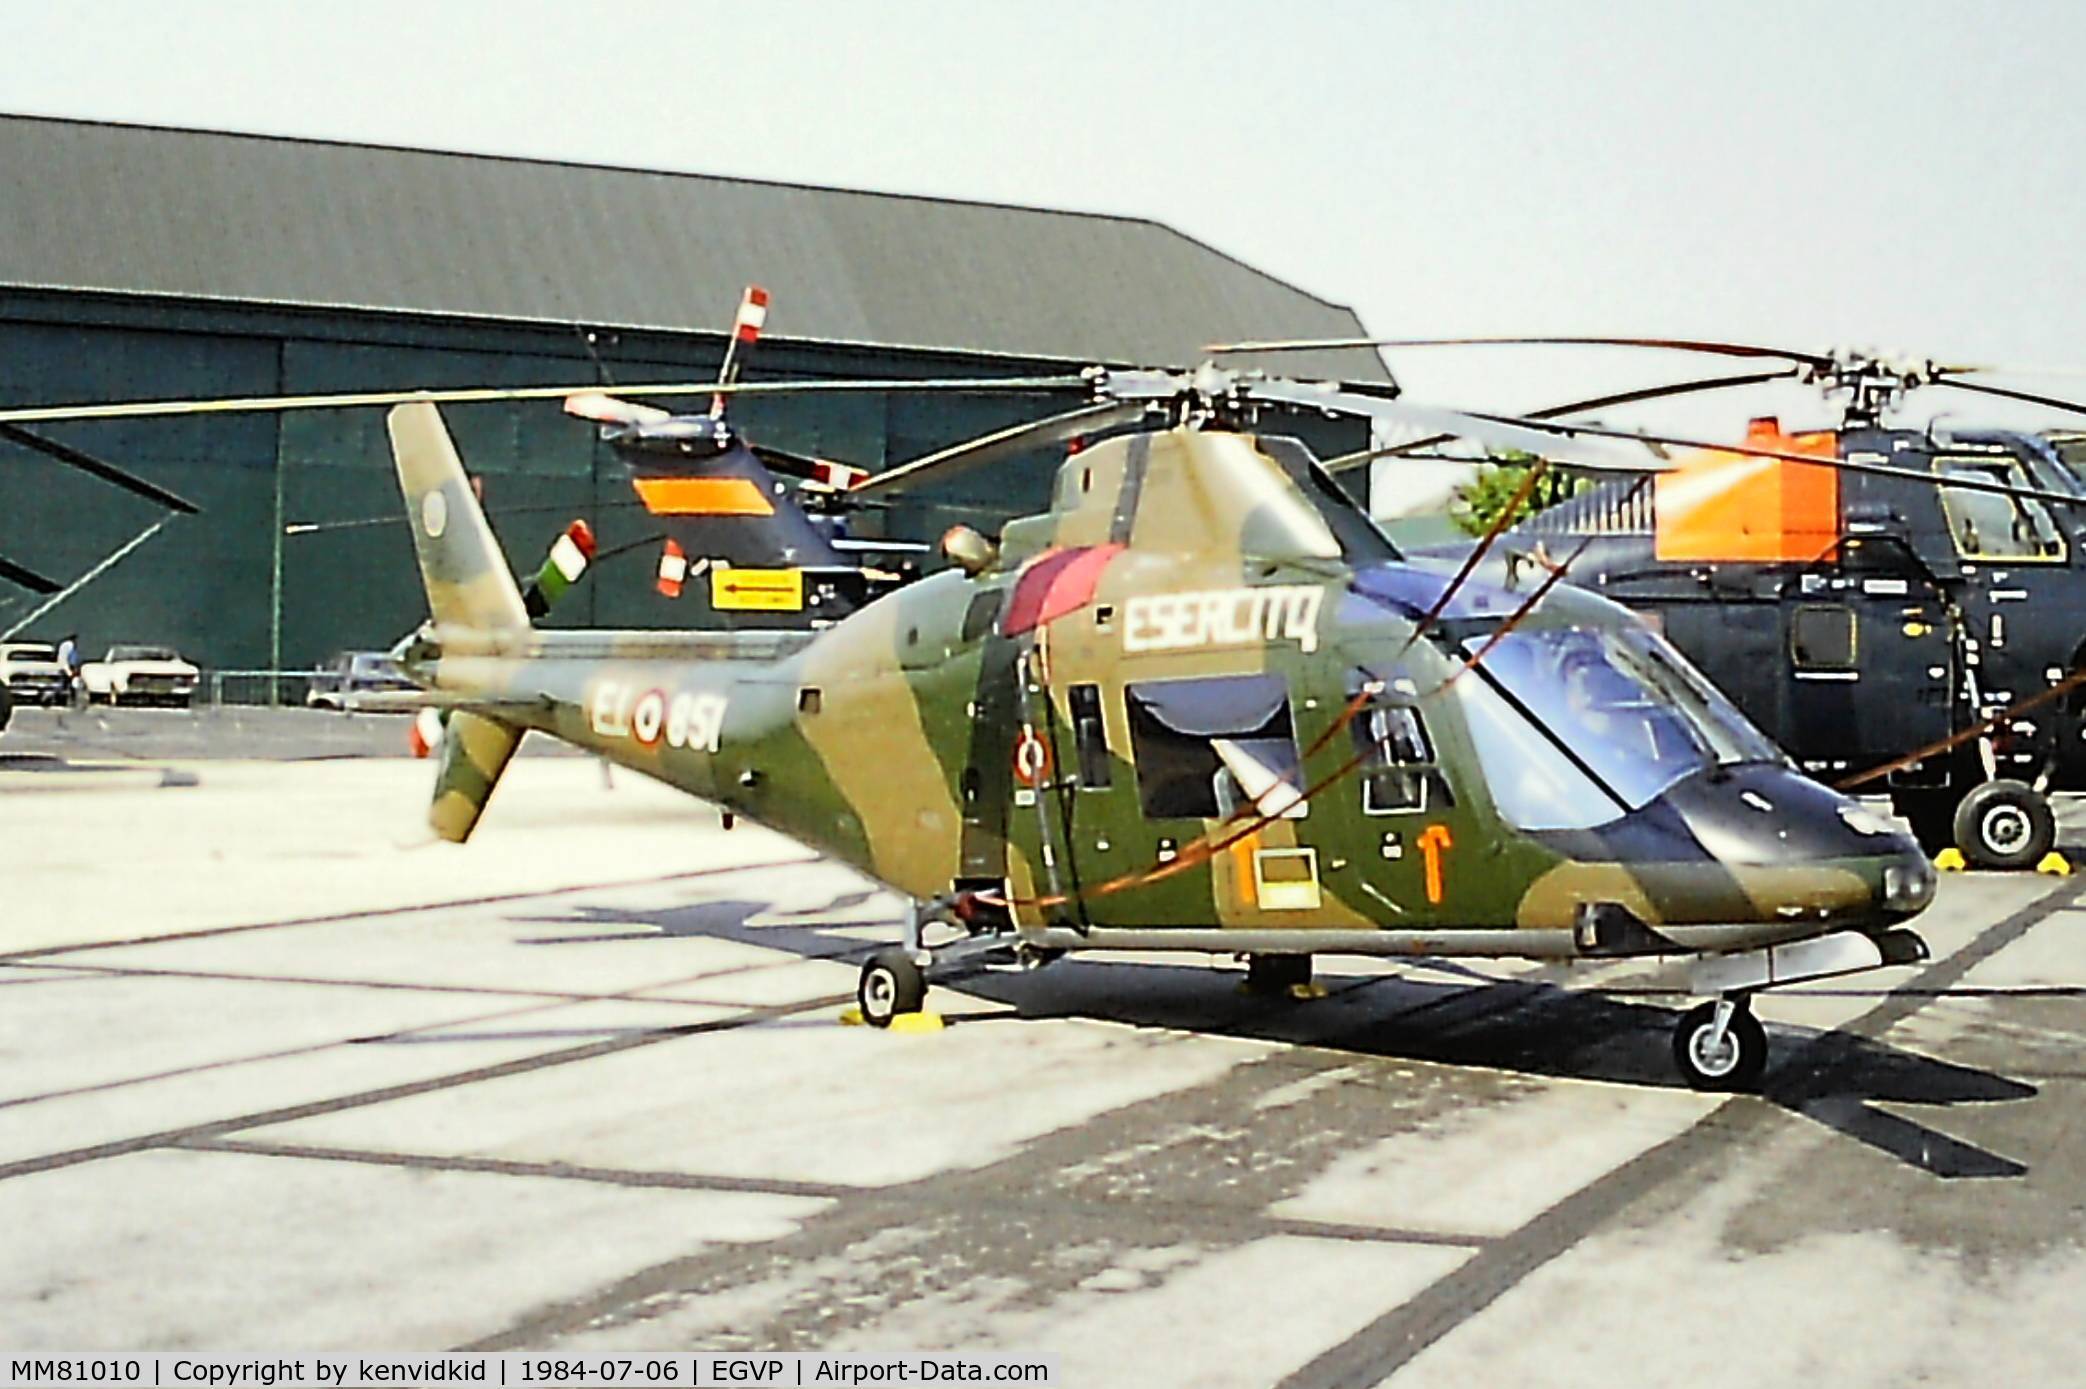 MM81010, 1976 Agusta A-109A Hirundo C/N 7114, At the 1984 Middle Wallop air show.